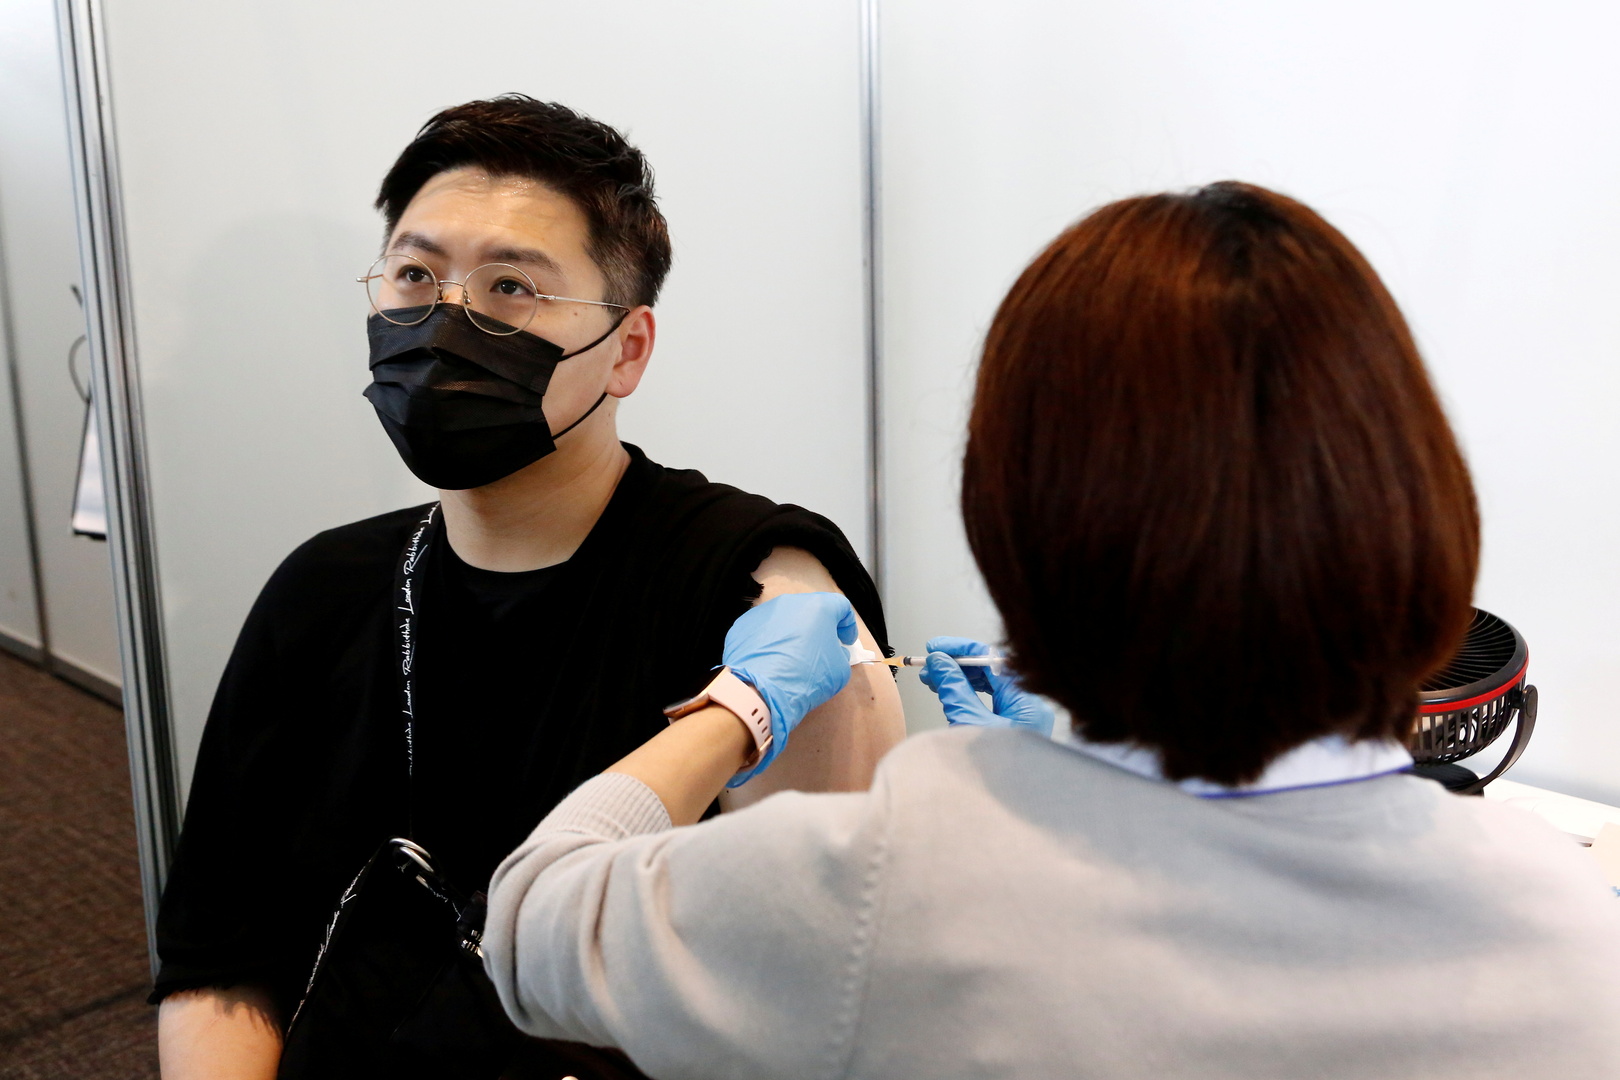 اليابان تعلن تفوقها على الولايات المتحدة من حيث معدل التطعيم ضد كورونا